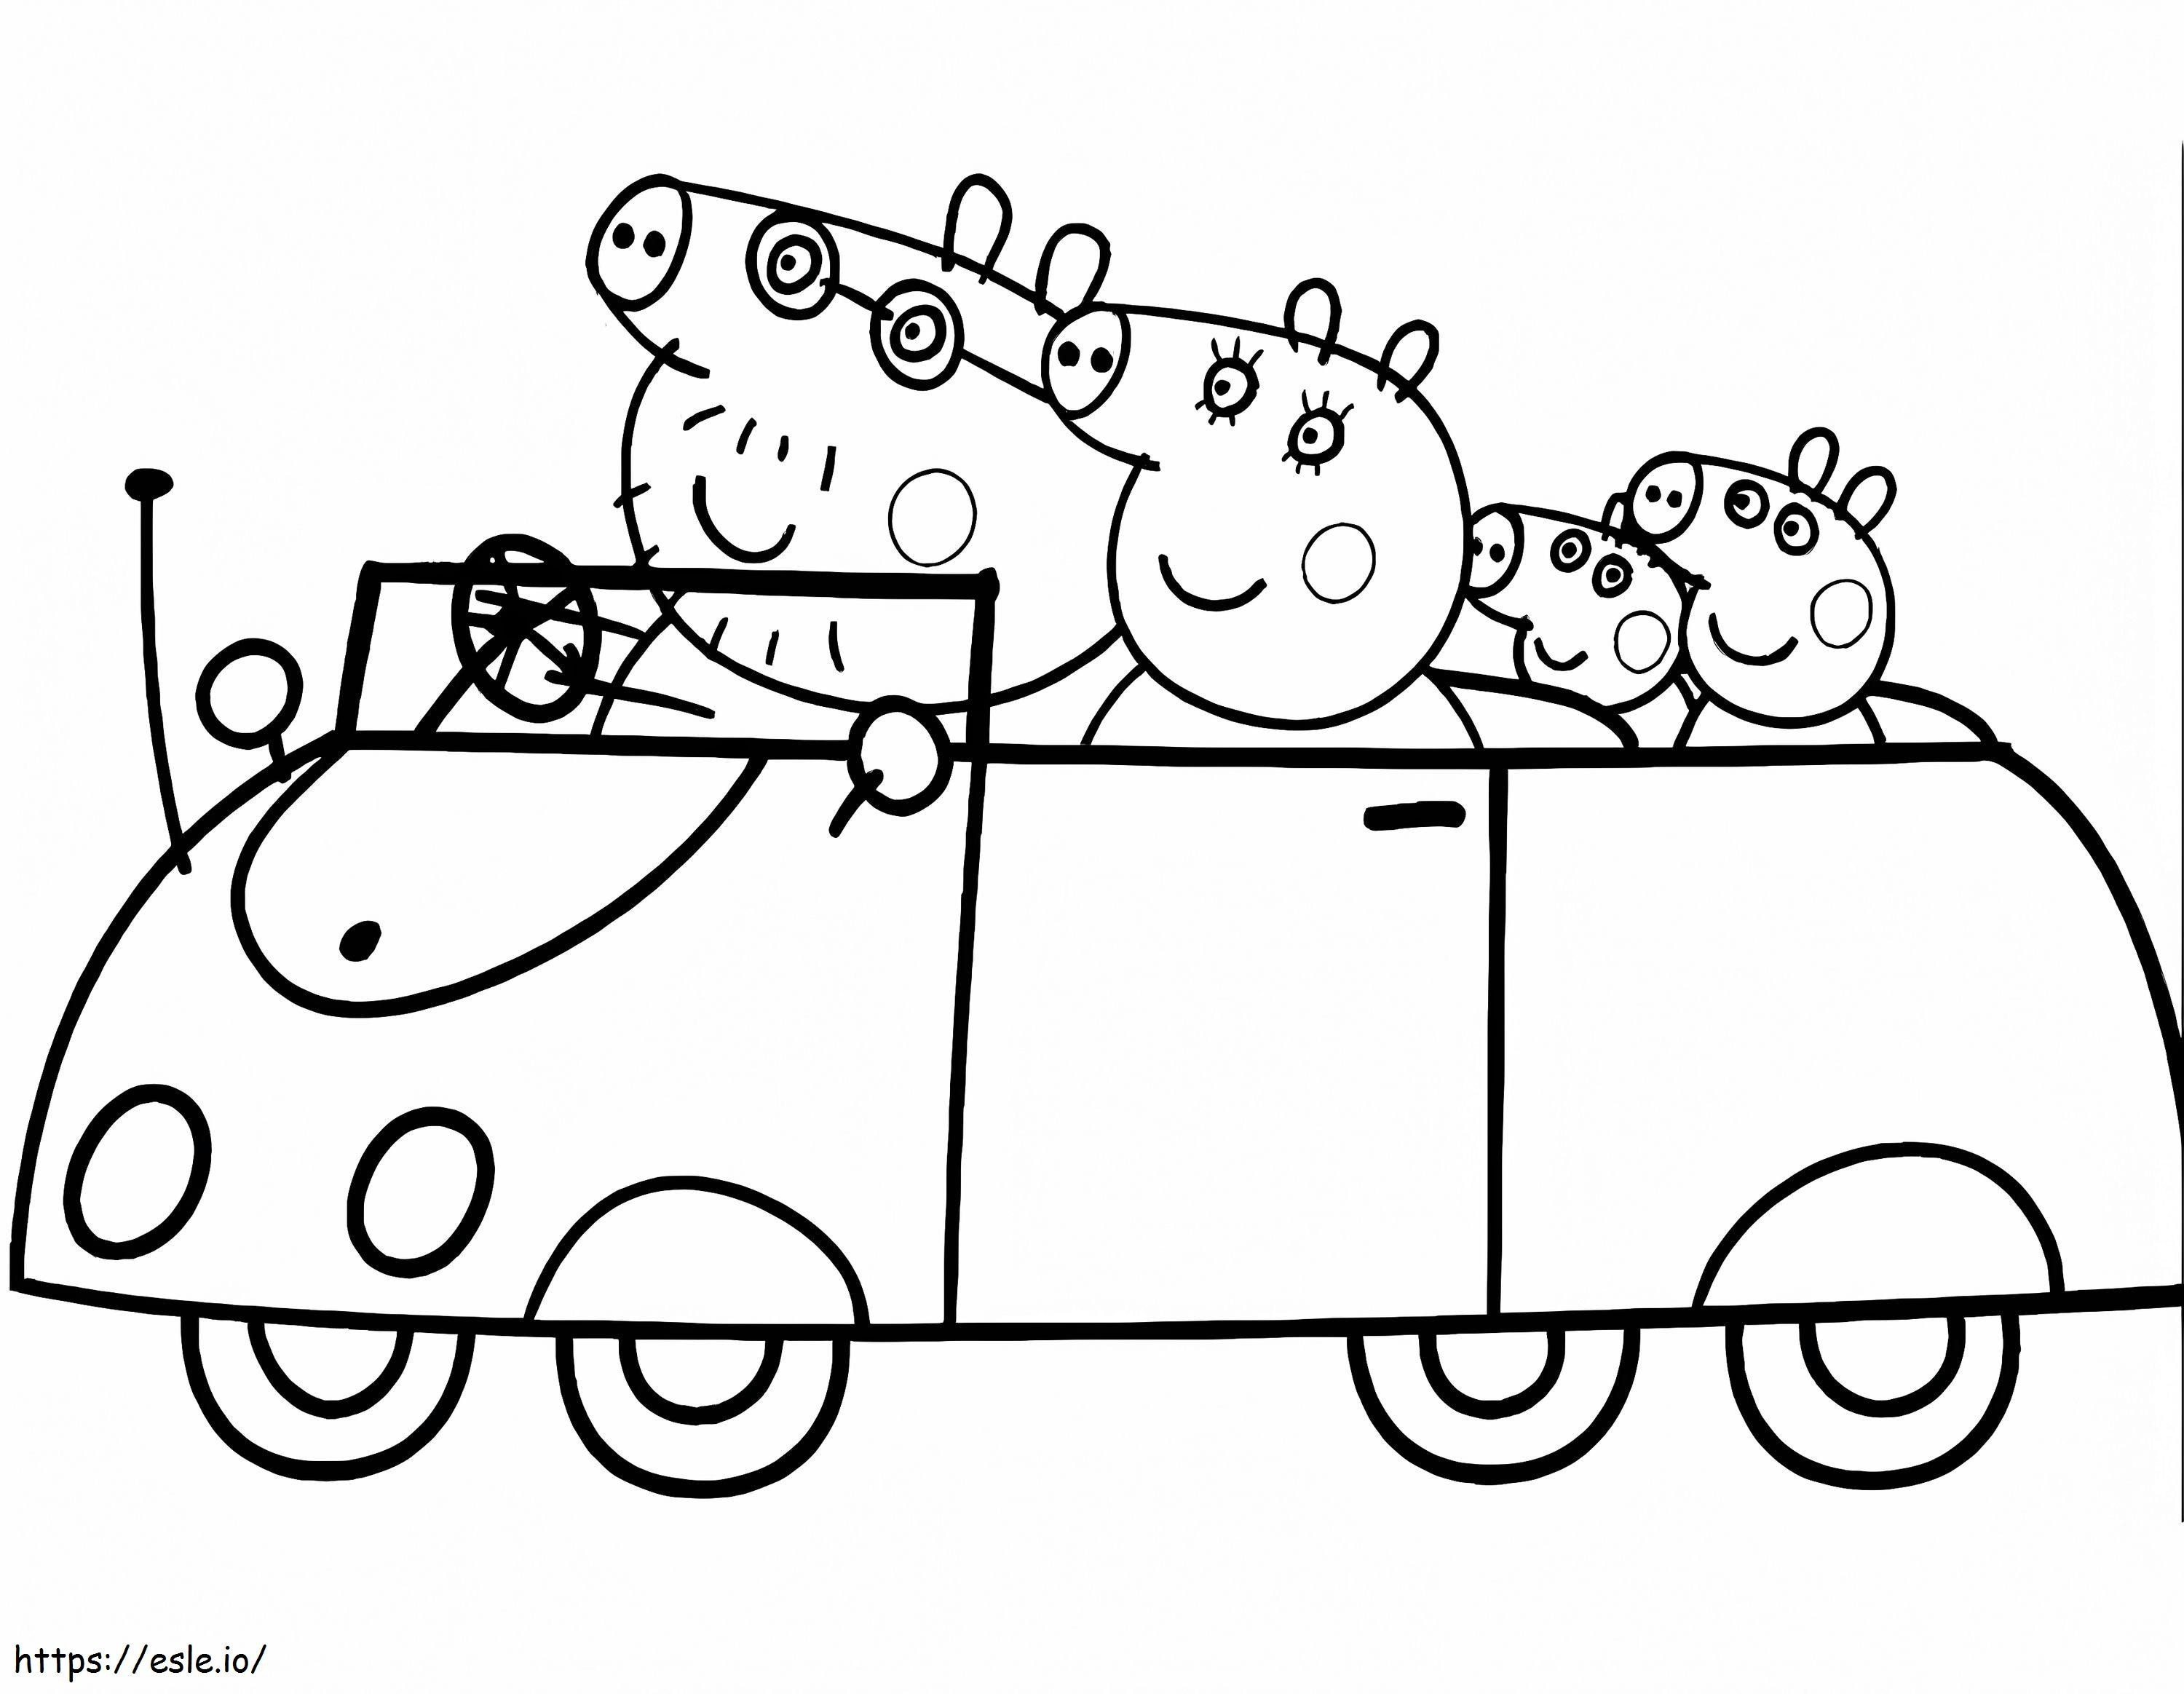 Coloriage Famille Peppa Pig en vacances à imprimer dessin